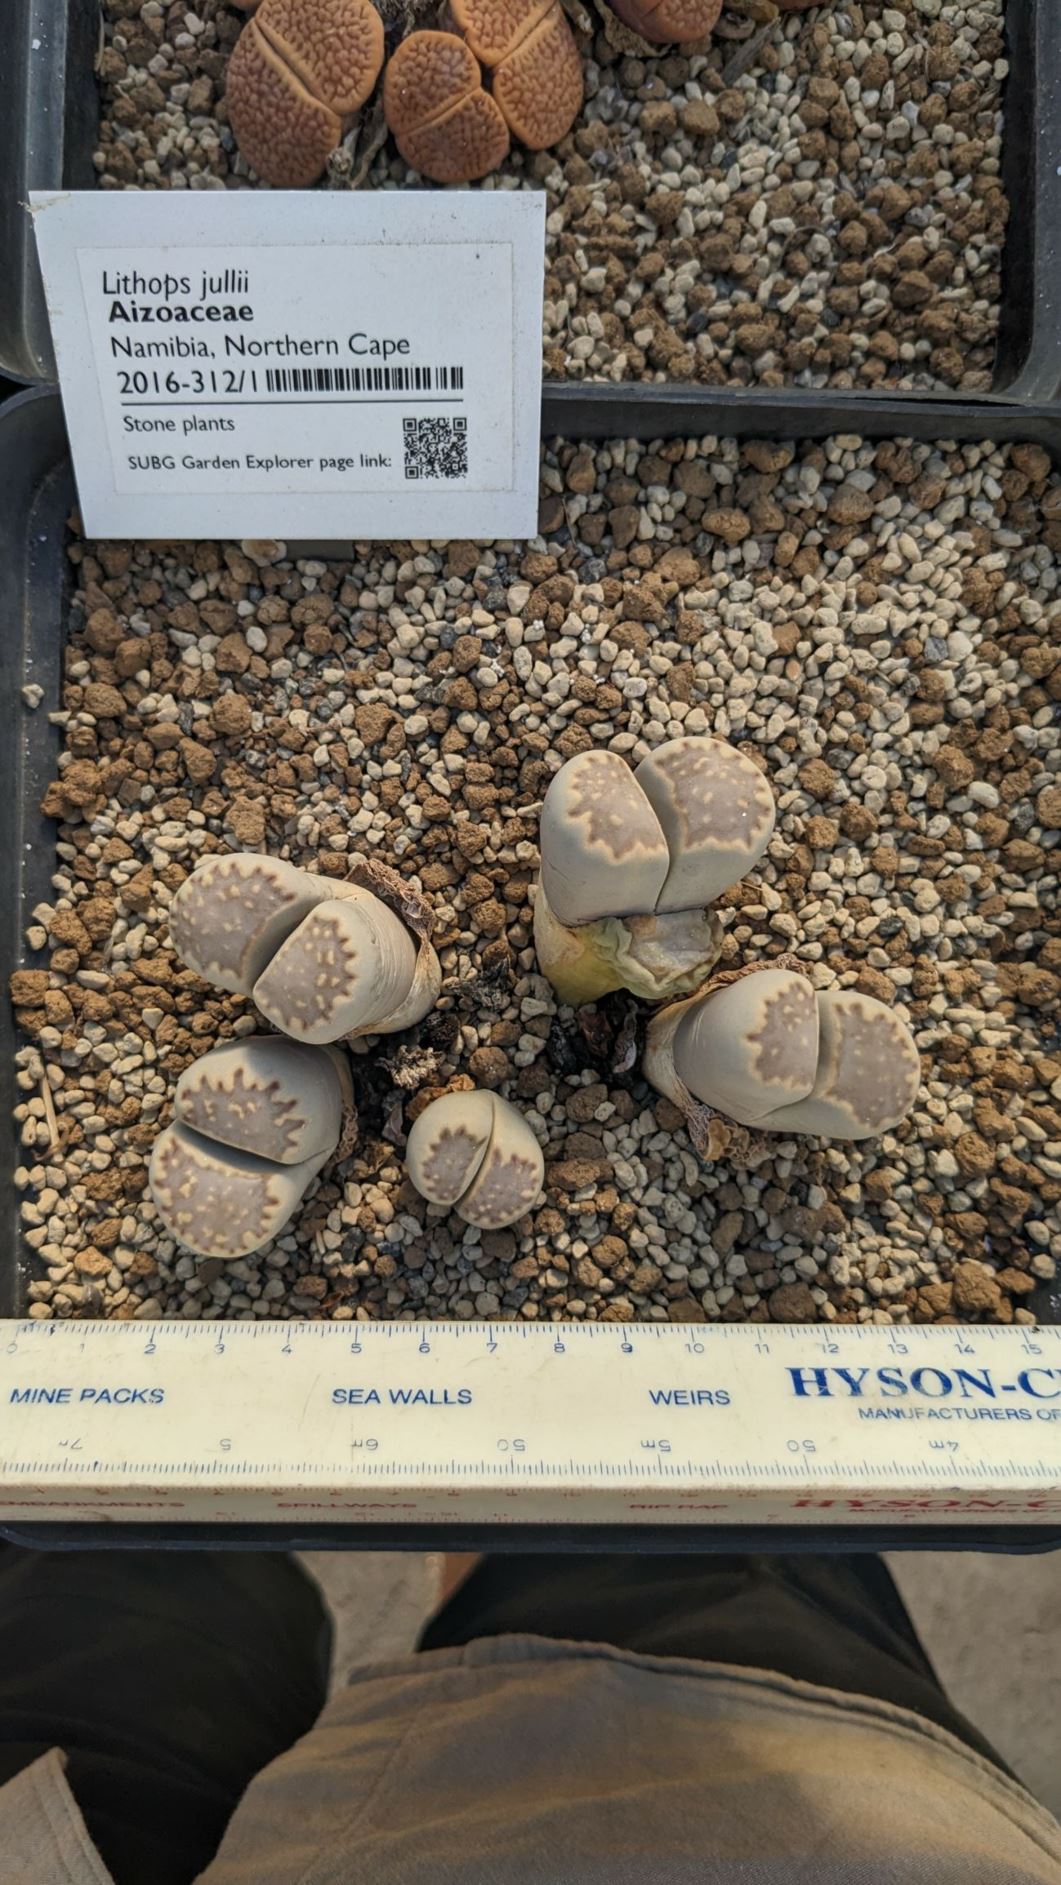 Lithops jullii - Beeskloutjies, Stone plants